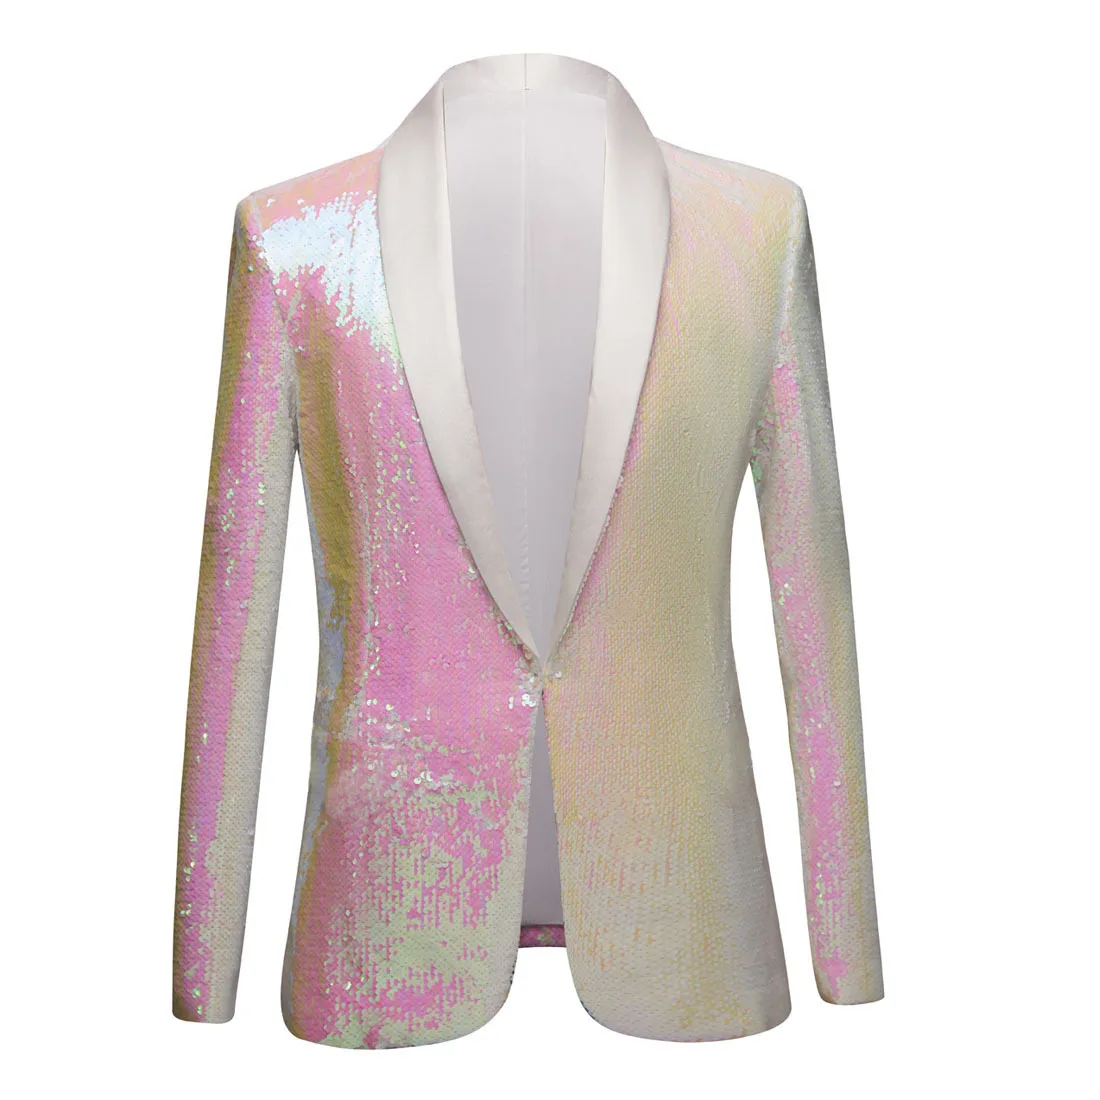 

Мужской официальный пиджак с блестками, однотонный Блейзер розового и белого цвета для празднования вечеринки, свадьбы, певицы, выступления на сцене, костюм, жакет